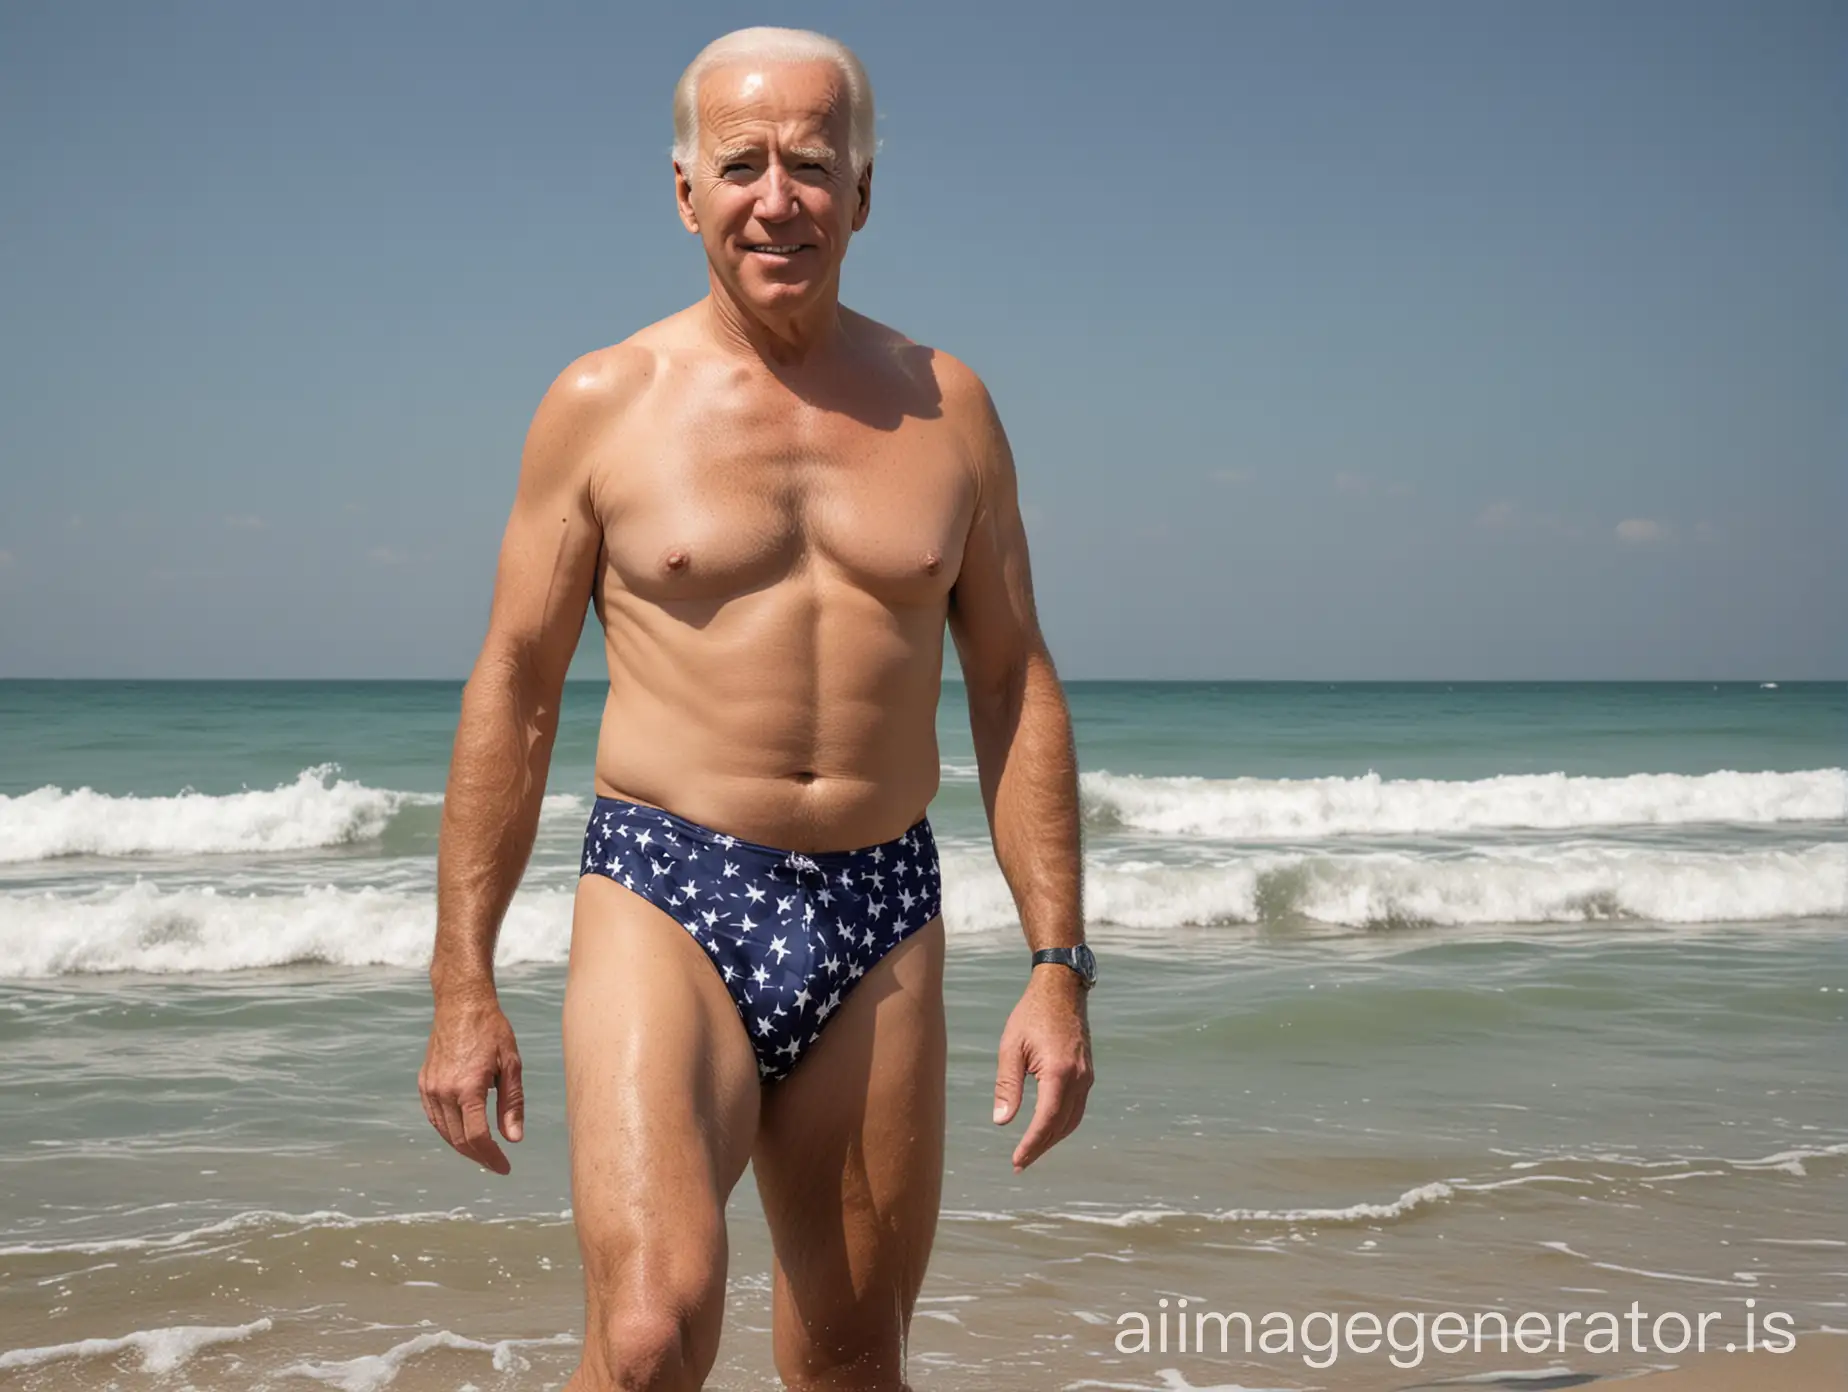 Create an image of President Joe Biden in swimsuit alone